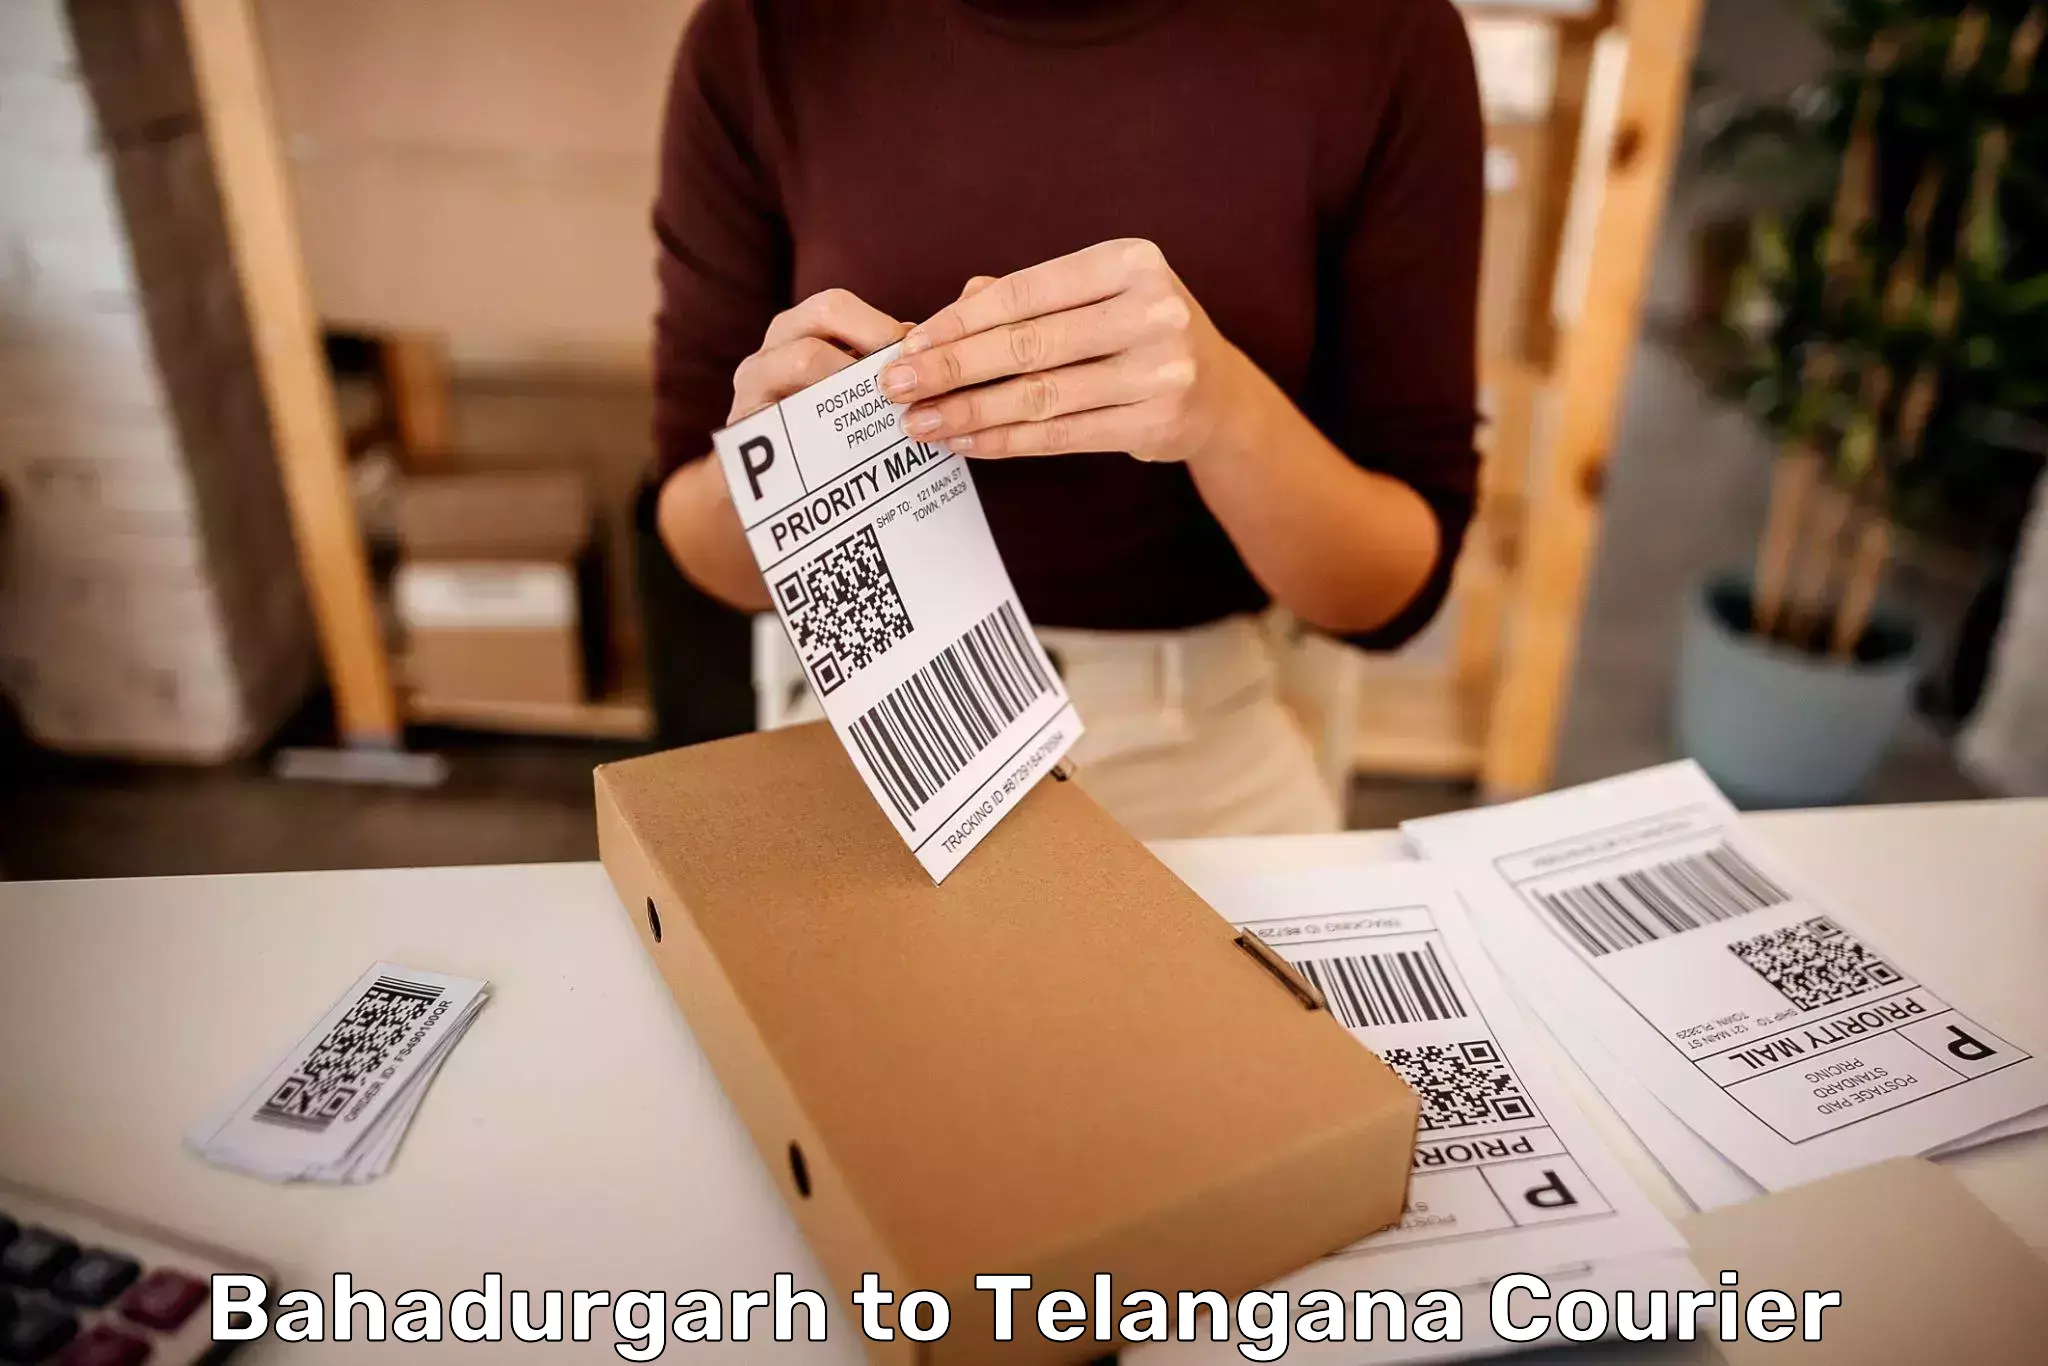 Baggage shipping optimization Bahadurgarh to Telangana